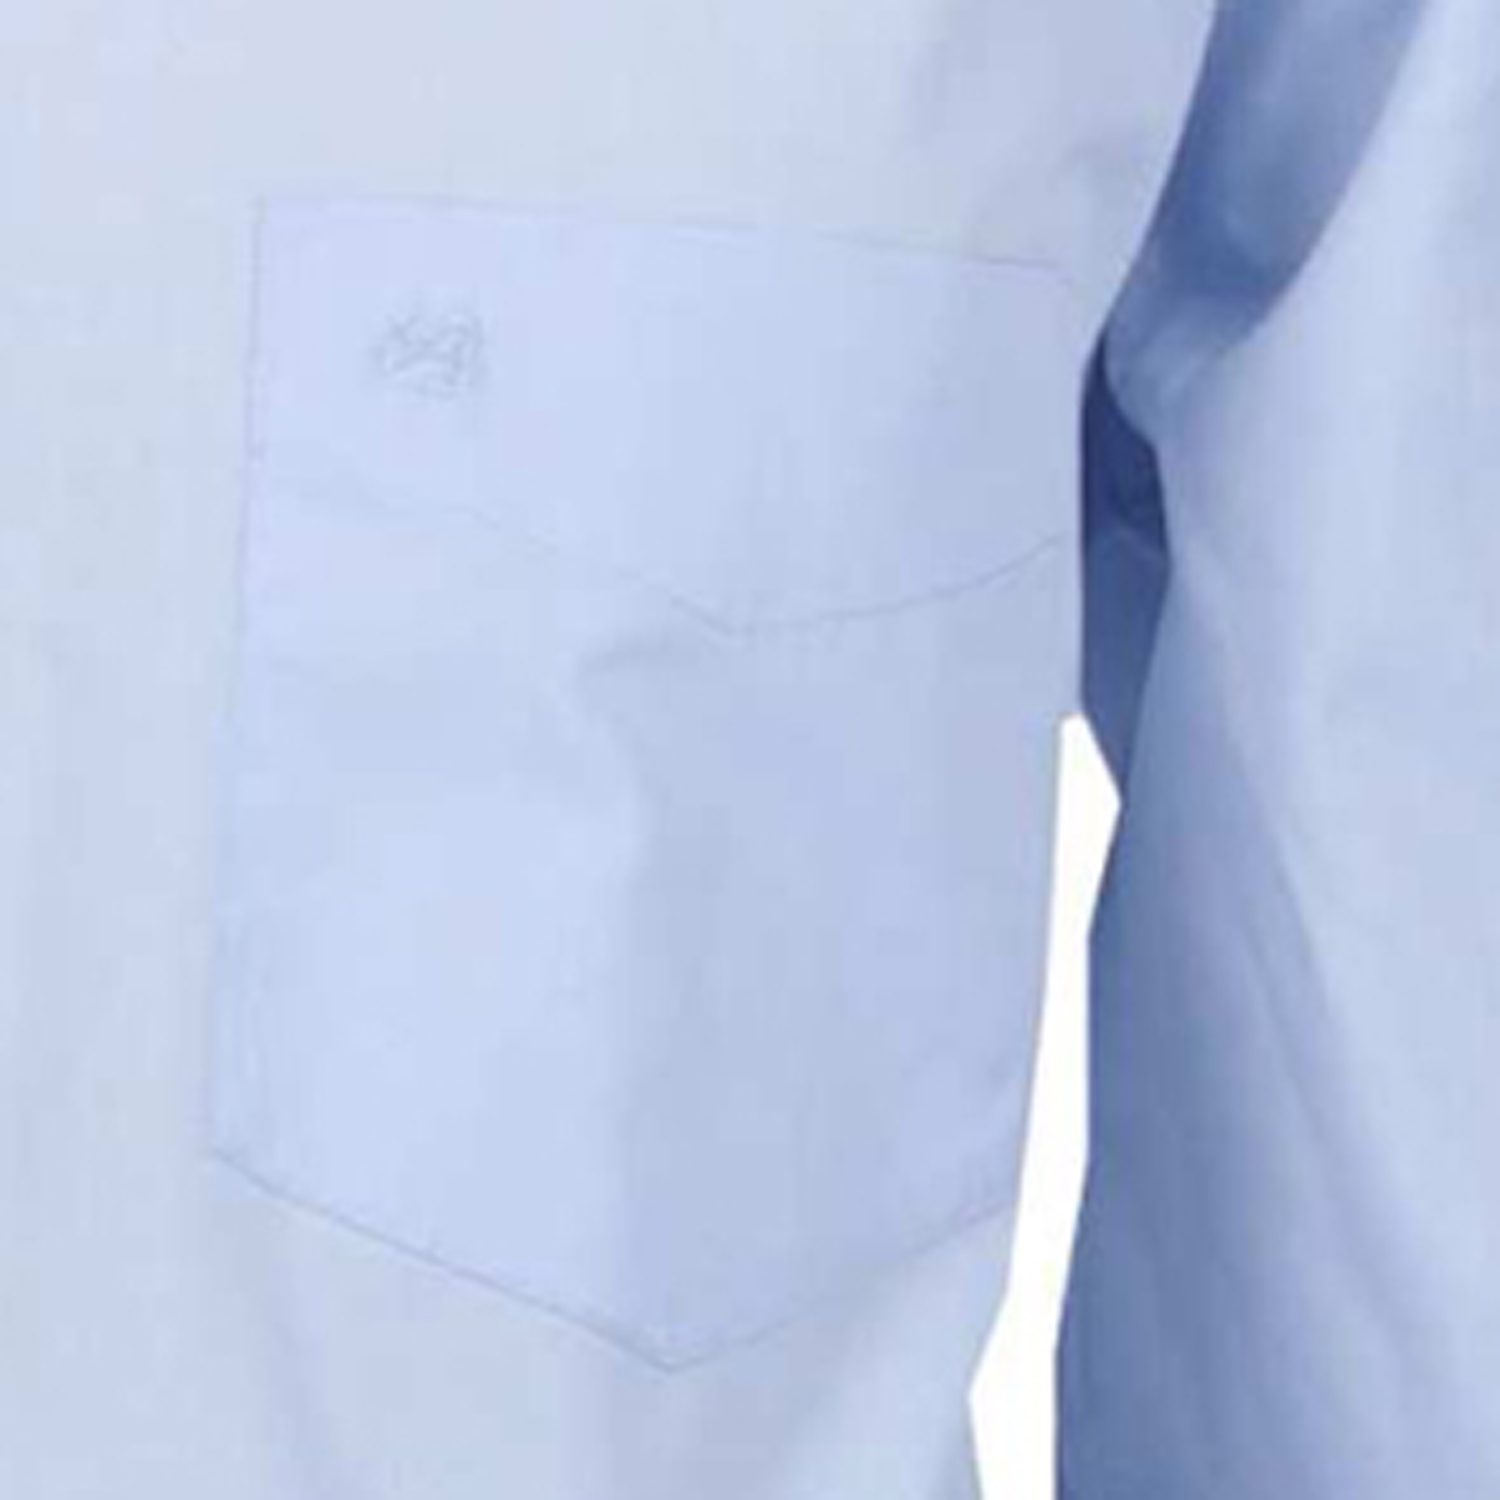 Hellblaues Langarmhemd von ARRIVEE in Übergrößen von XL bis 6XL